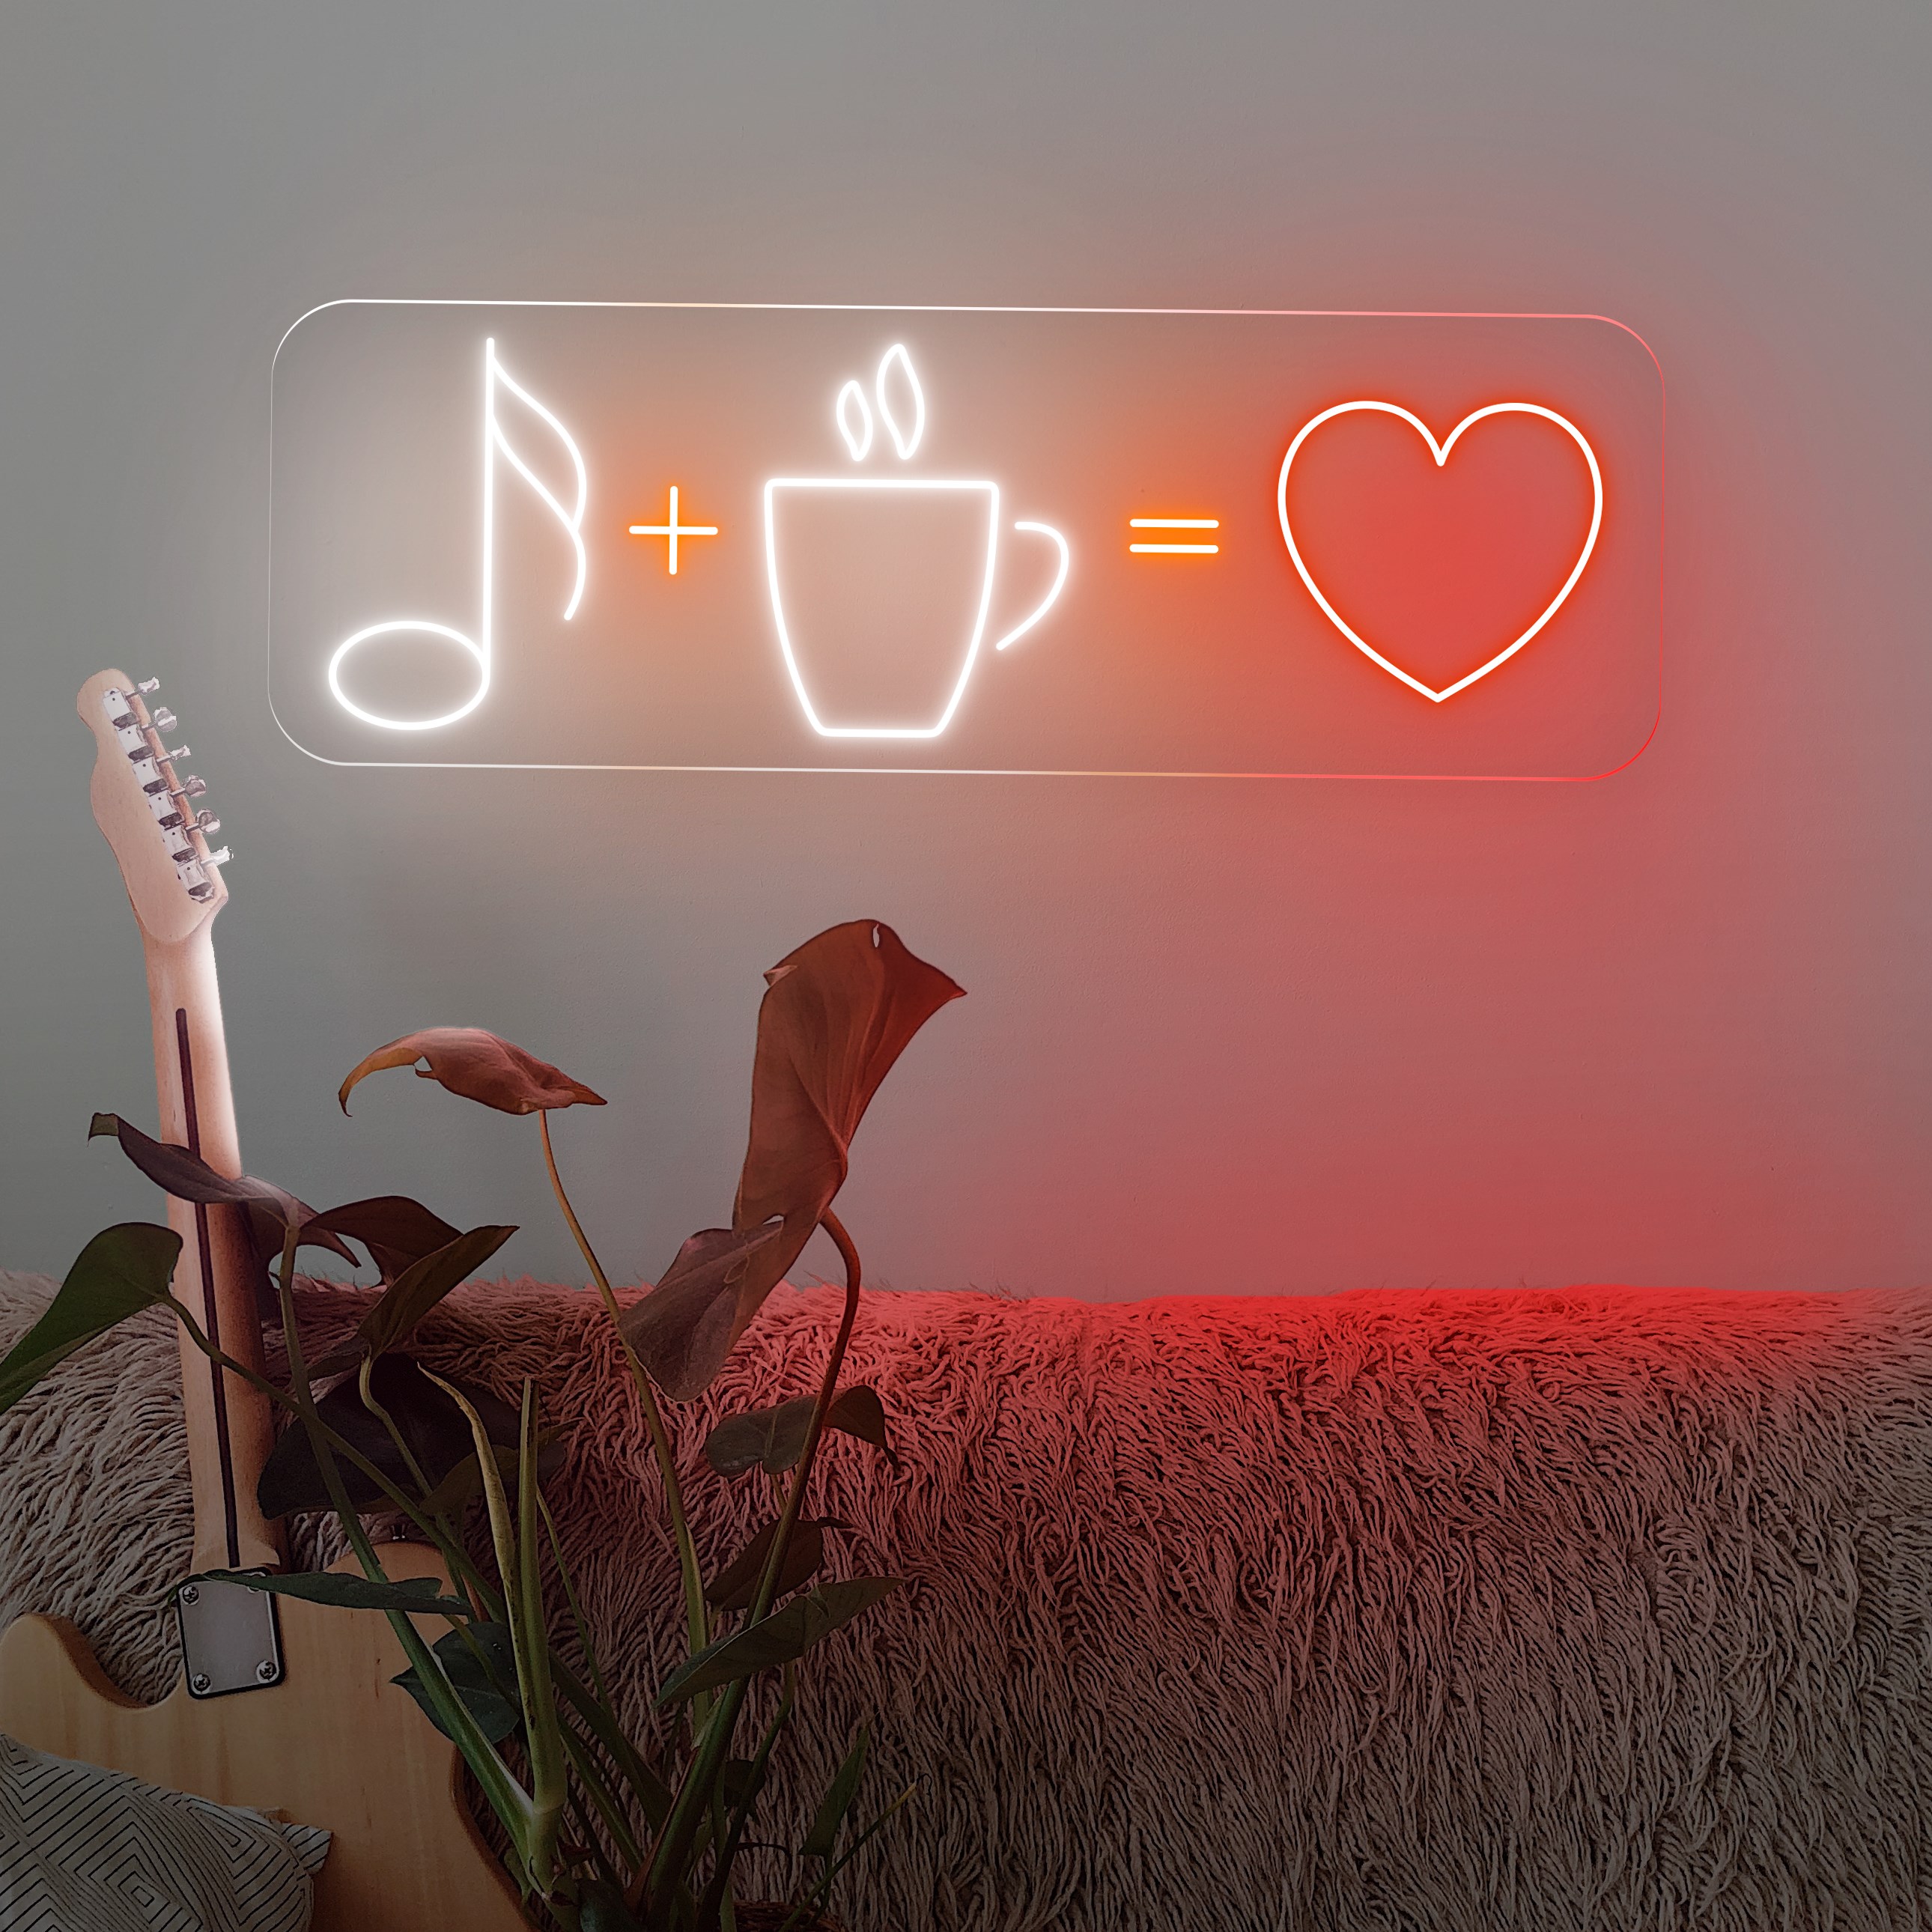 Bild von Neon "Coffee + Music = Love"